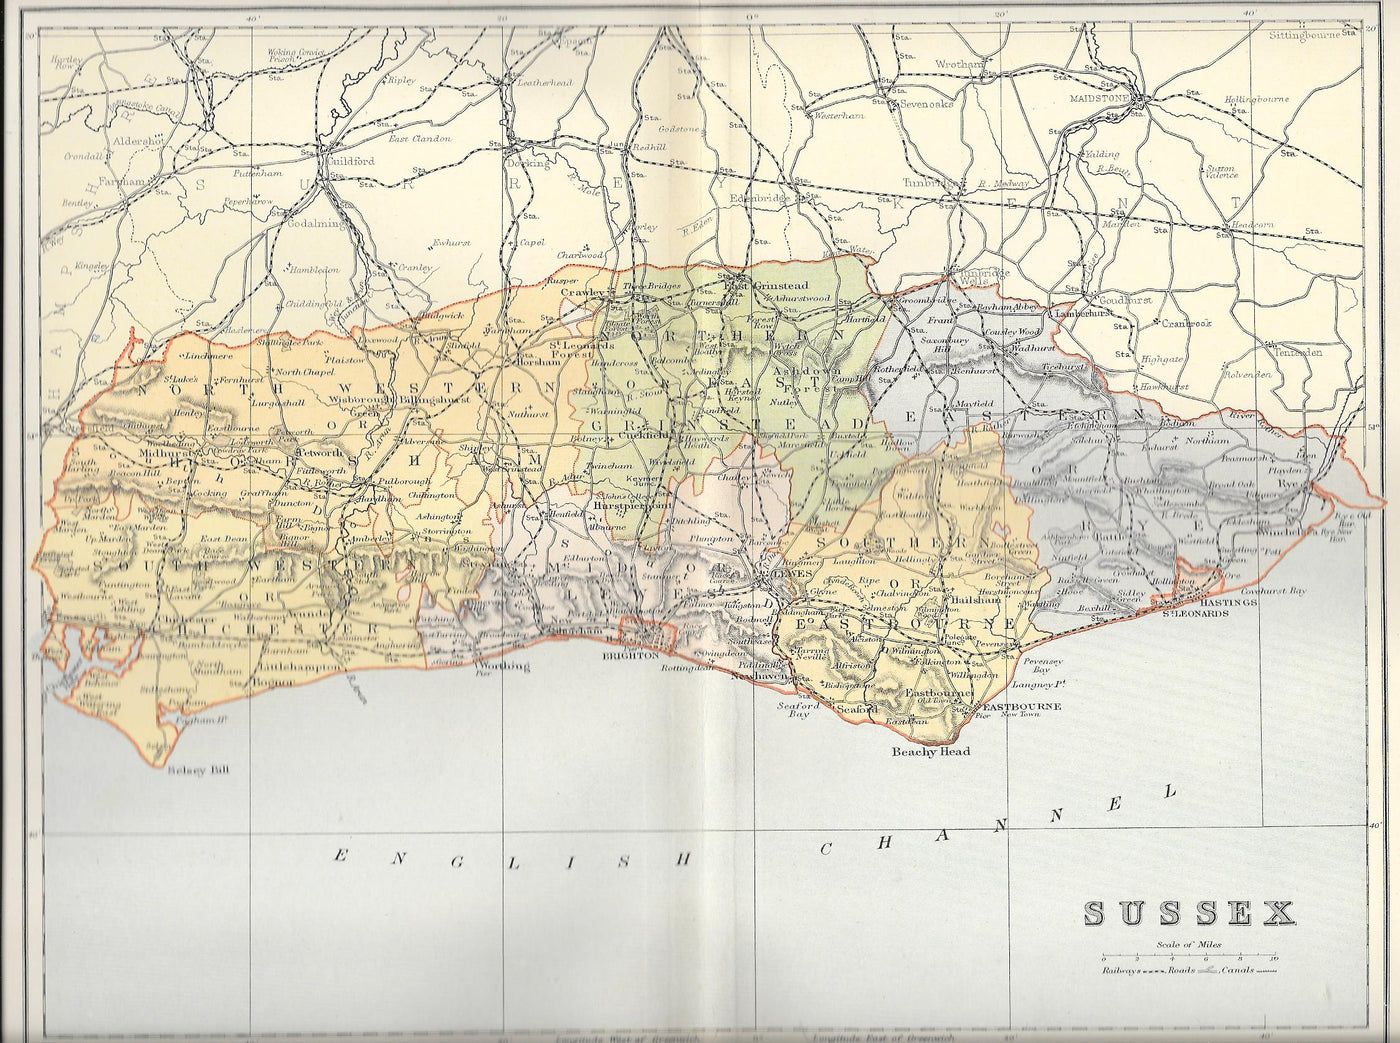 Sussex antique map published 1895